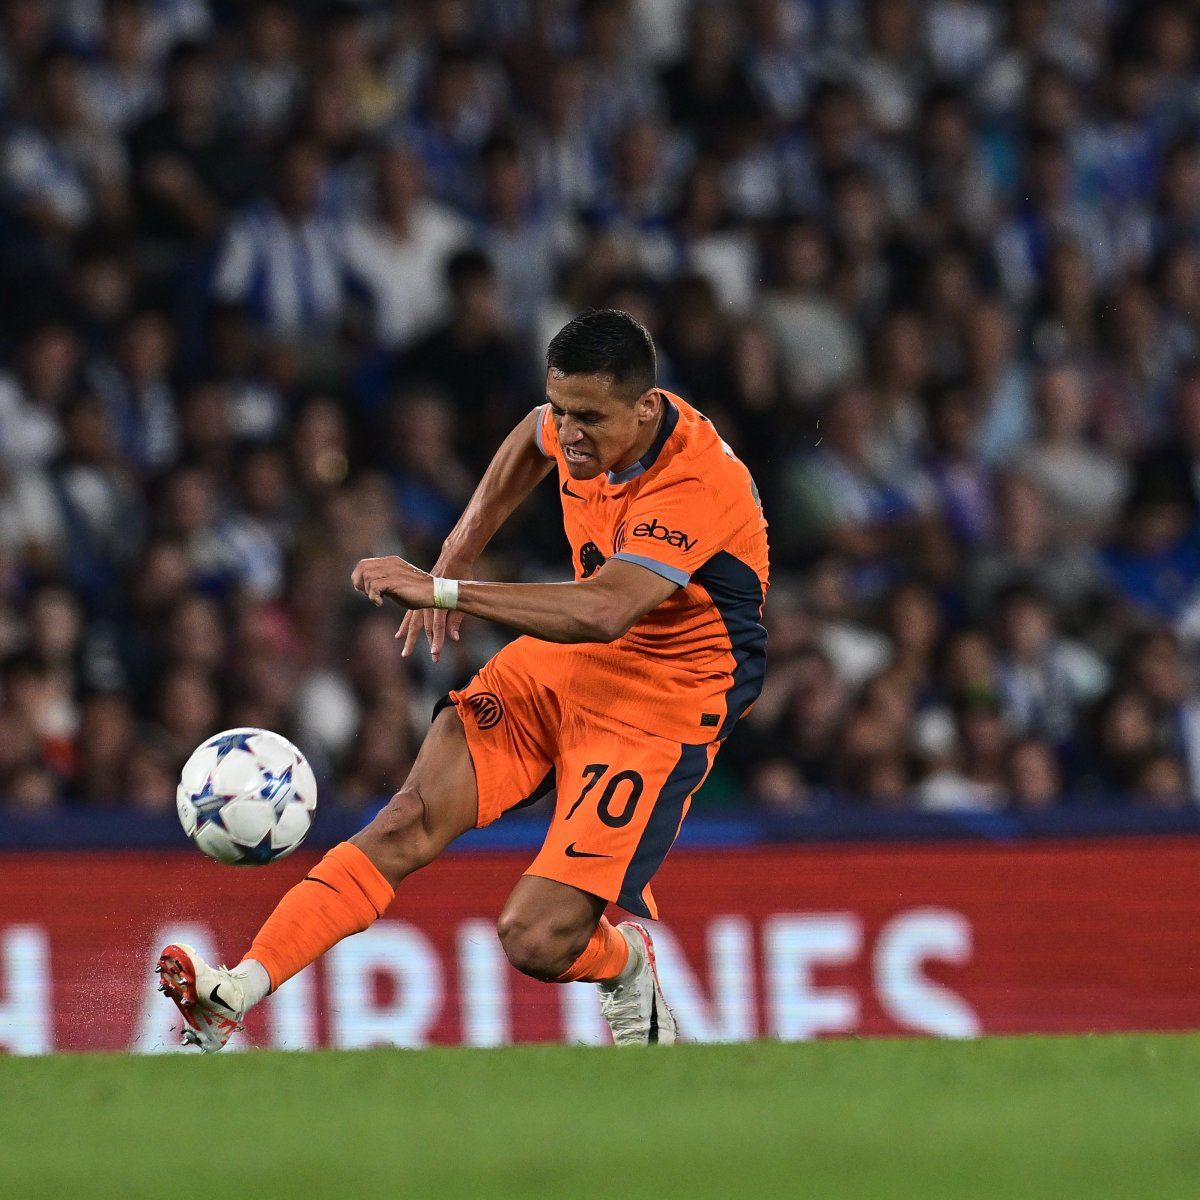 De l’adieu amer au changement de jeu en Espagne, Alexis Sanchez ne peut être considéré comme le 4ème attaquant avec son talent et son impact.